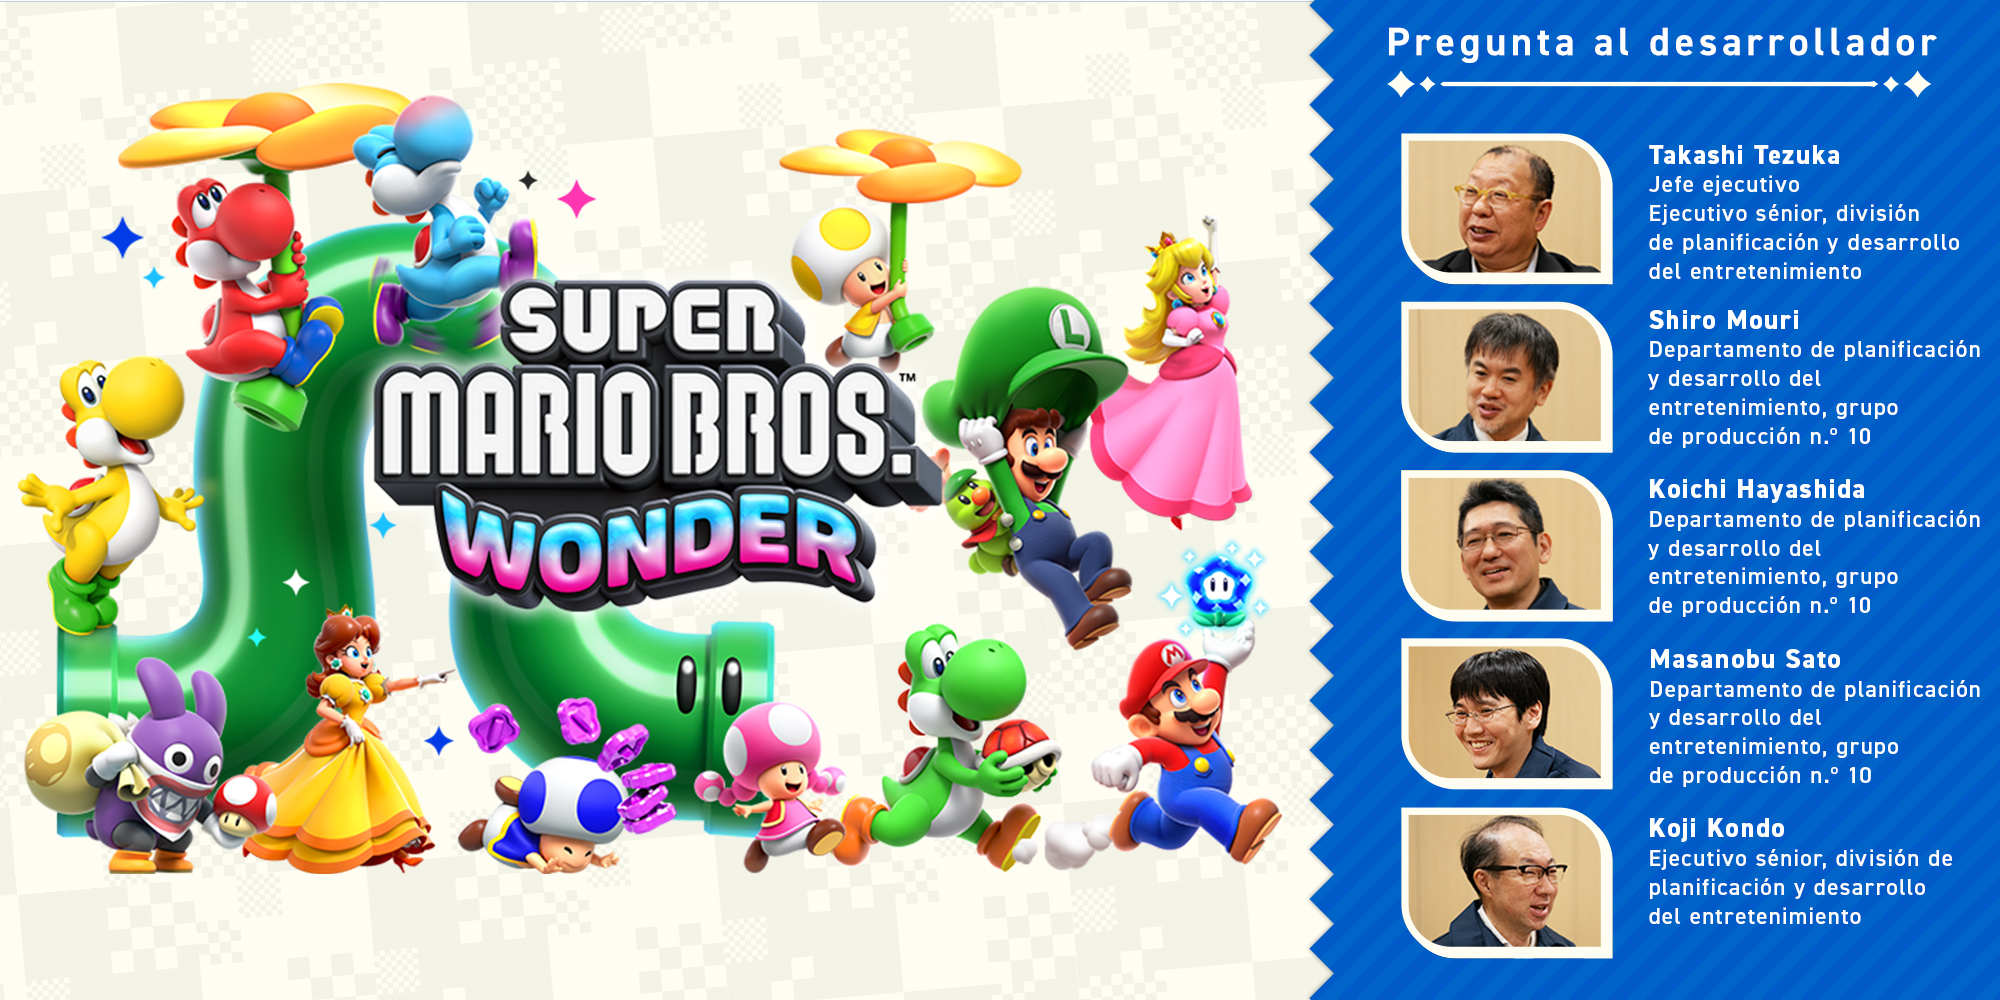 Pregunta al desarrollador, volumen 11. Super Mario Bros. Wonder – Capítulo 1